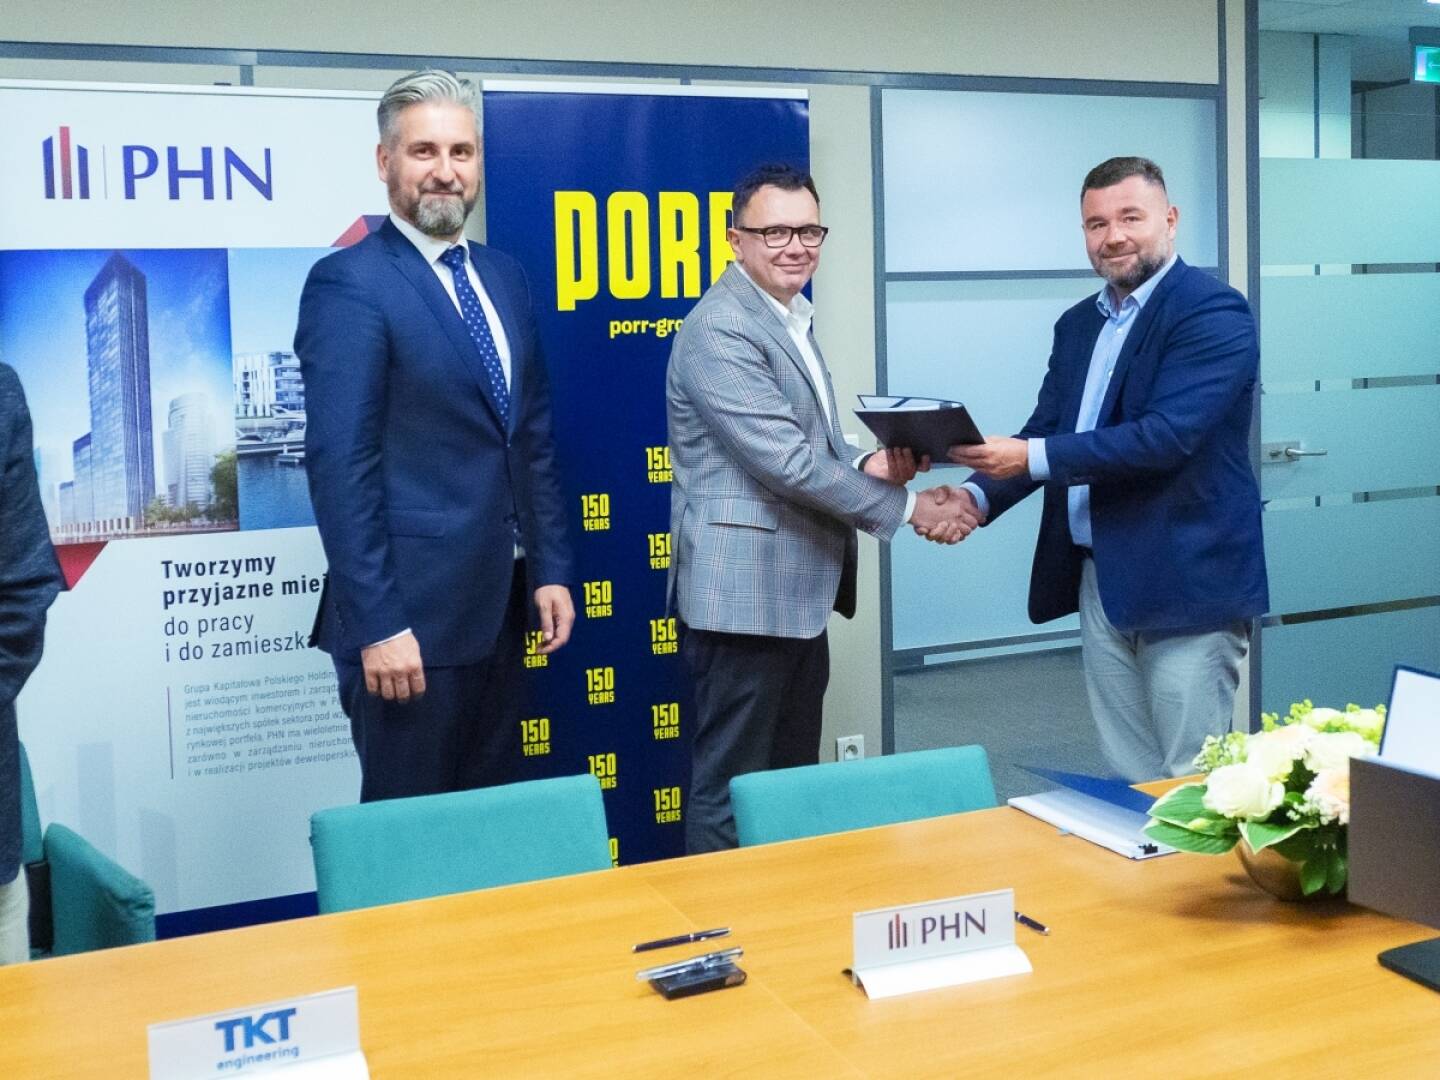 PORR erhält Zuschlag für SKYSAWA Hochbau-Projekt in Warschau - beim Signing von links: Tomasz Górnicki (PHN Vice President), Marcin Mazurek (PHN CEO) und Piotr Kledzik (PORR S.A. CEO), Credit: Porr